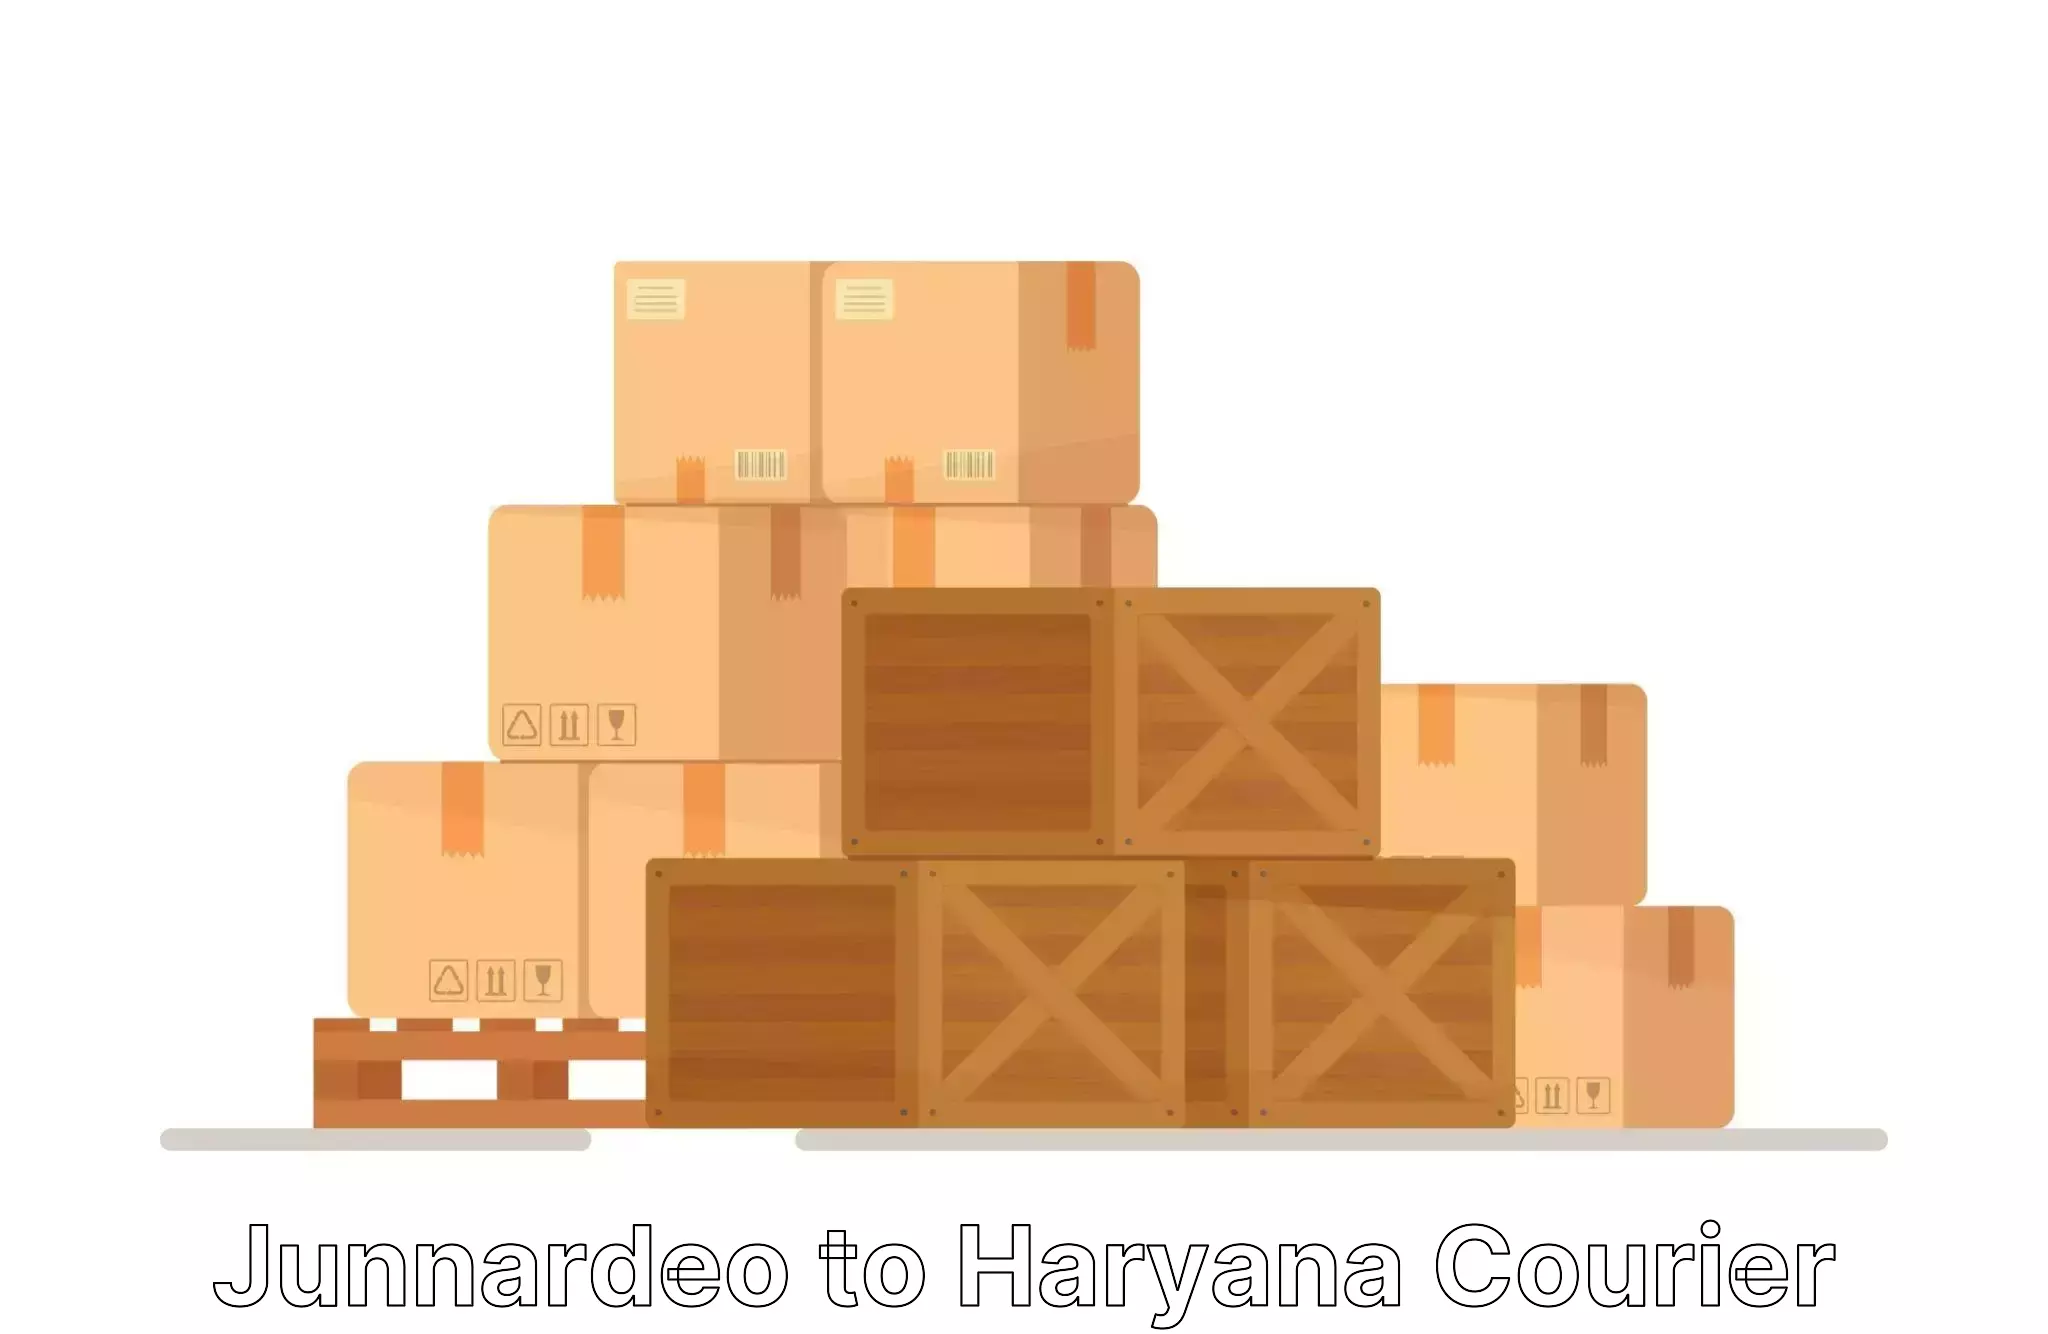 Door-to-door relocation services in Junnardeo to Bilaspur Haryana